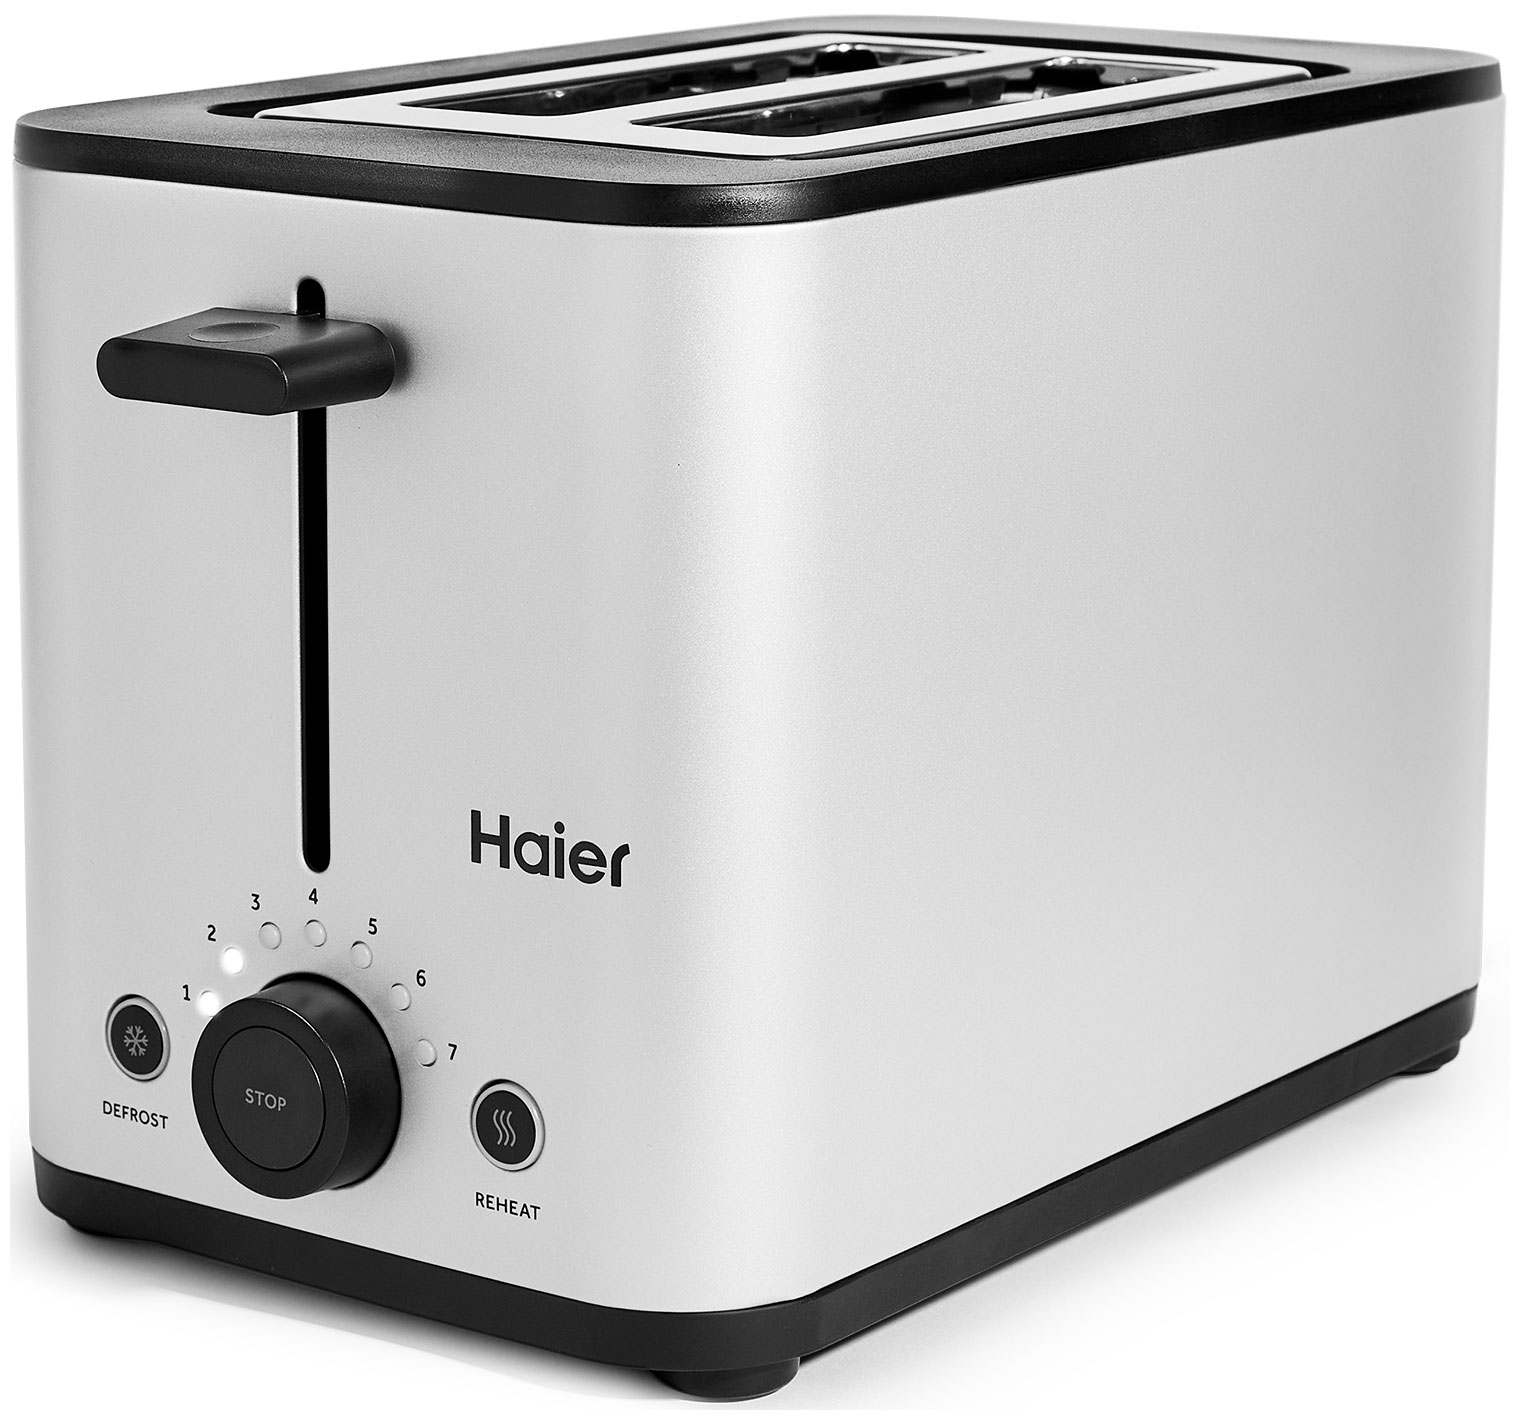 Тостер Haier HT-601 серебристый тостер haier ht 600 white